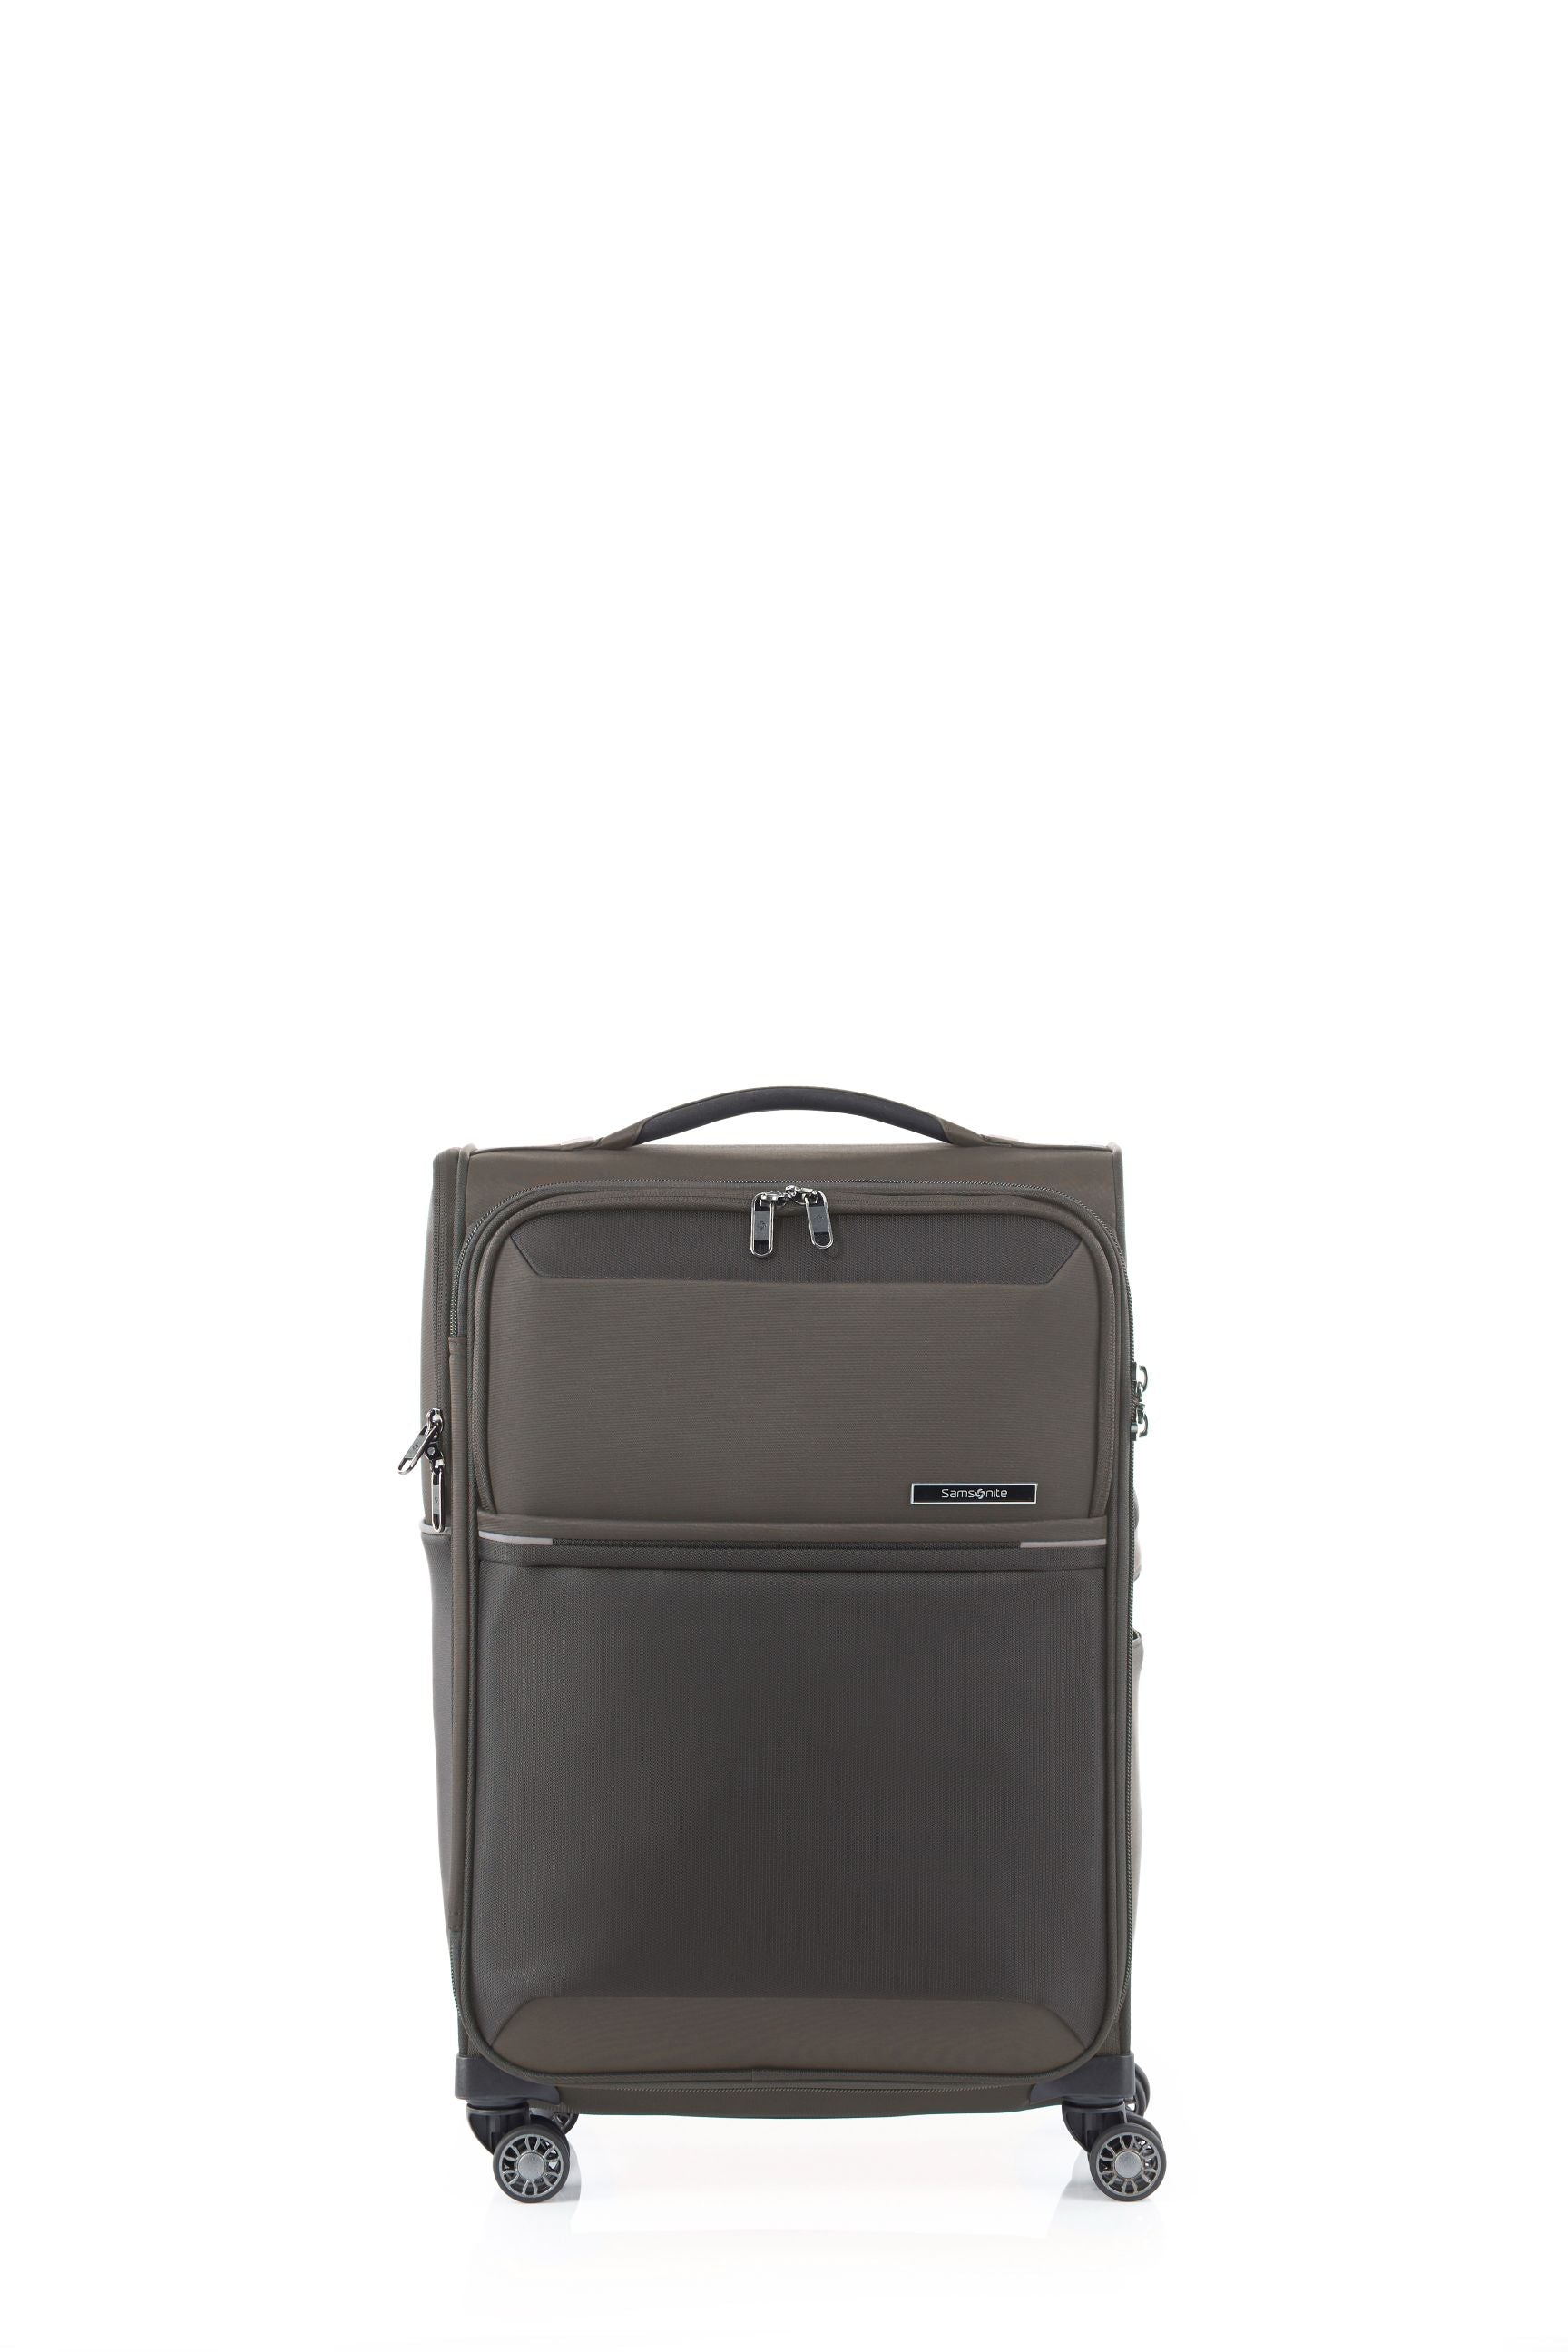 Samsonite - 73HR 55cm Small Suitcase - Platinum Grey-2